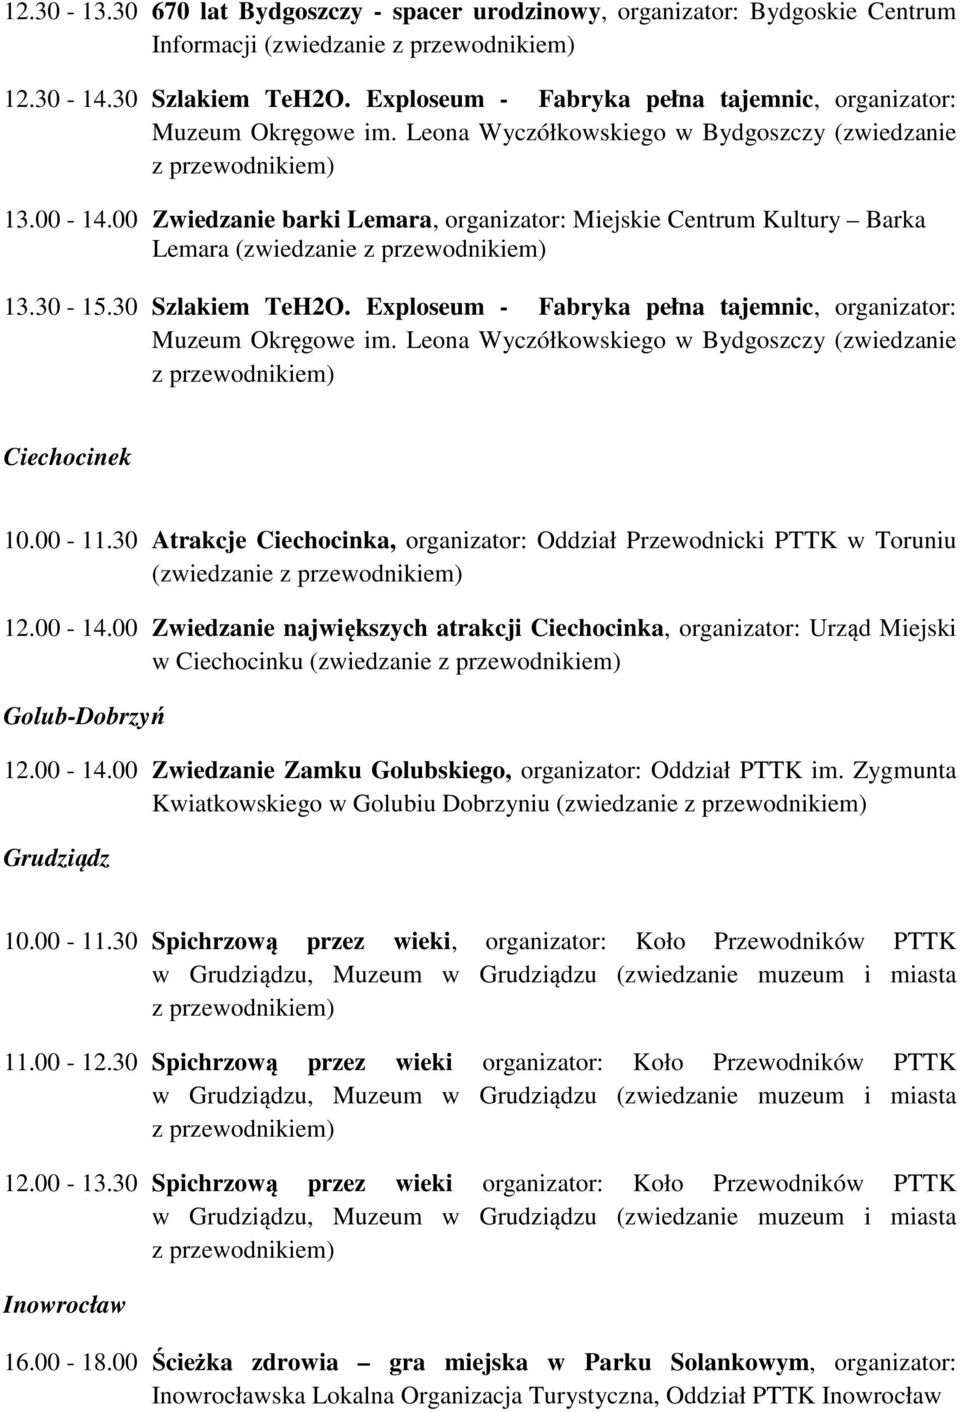 30 Atrakcje Ciechocinka, organizator: Oddział Przewodnicki PTTK w Toruniu (zwiedzanie 12.00-14.